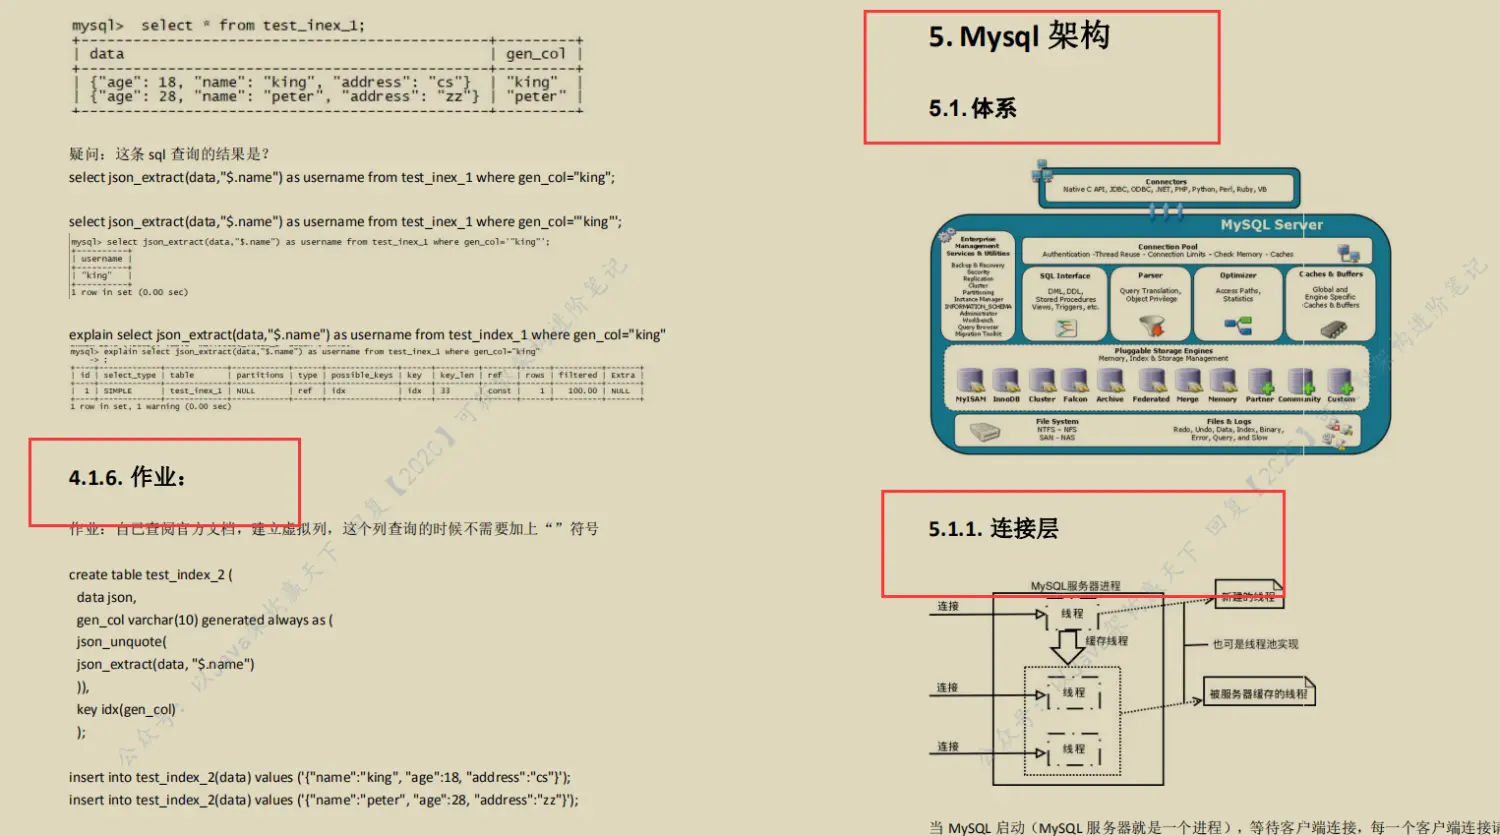 全网火爆MySql 开源笔记，图文并茂易上手，阿里P8都说好